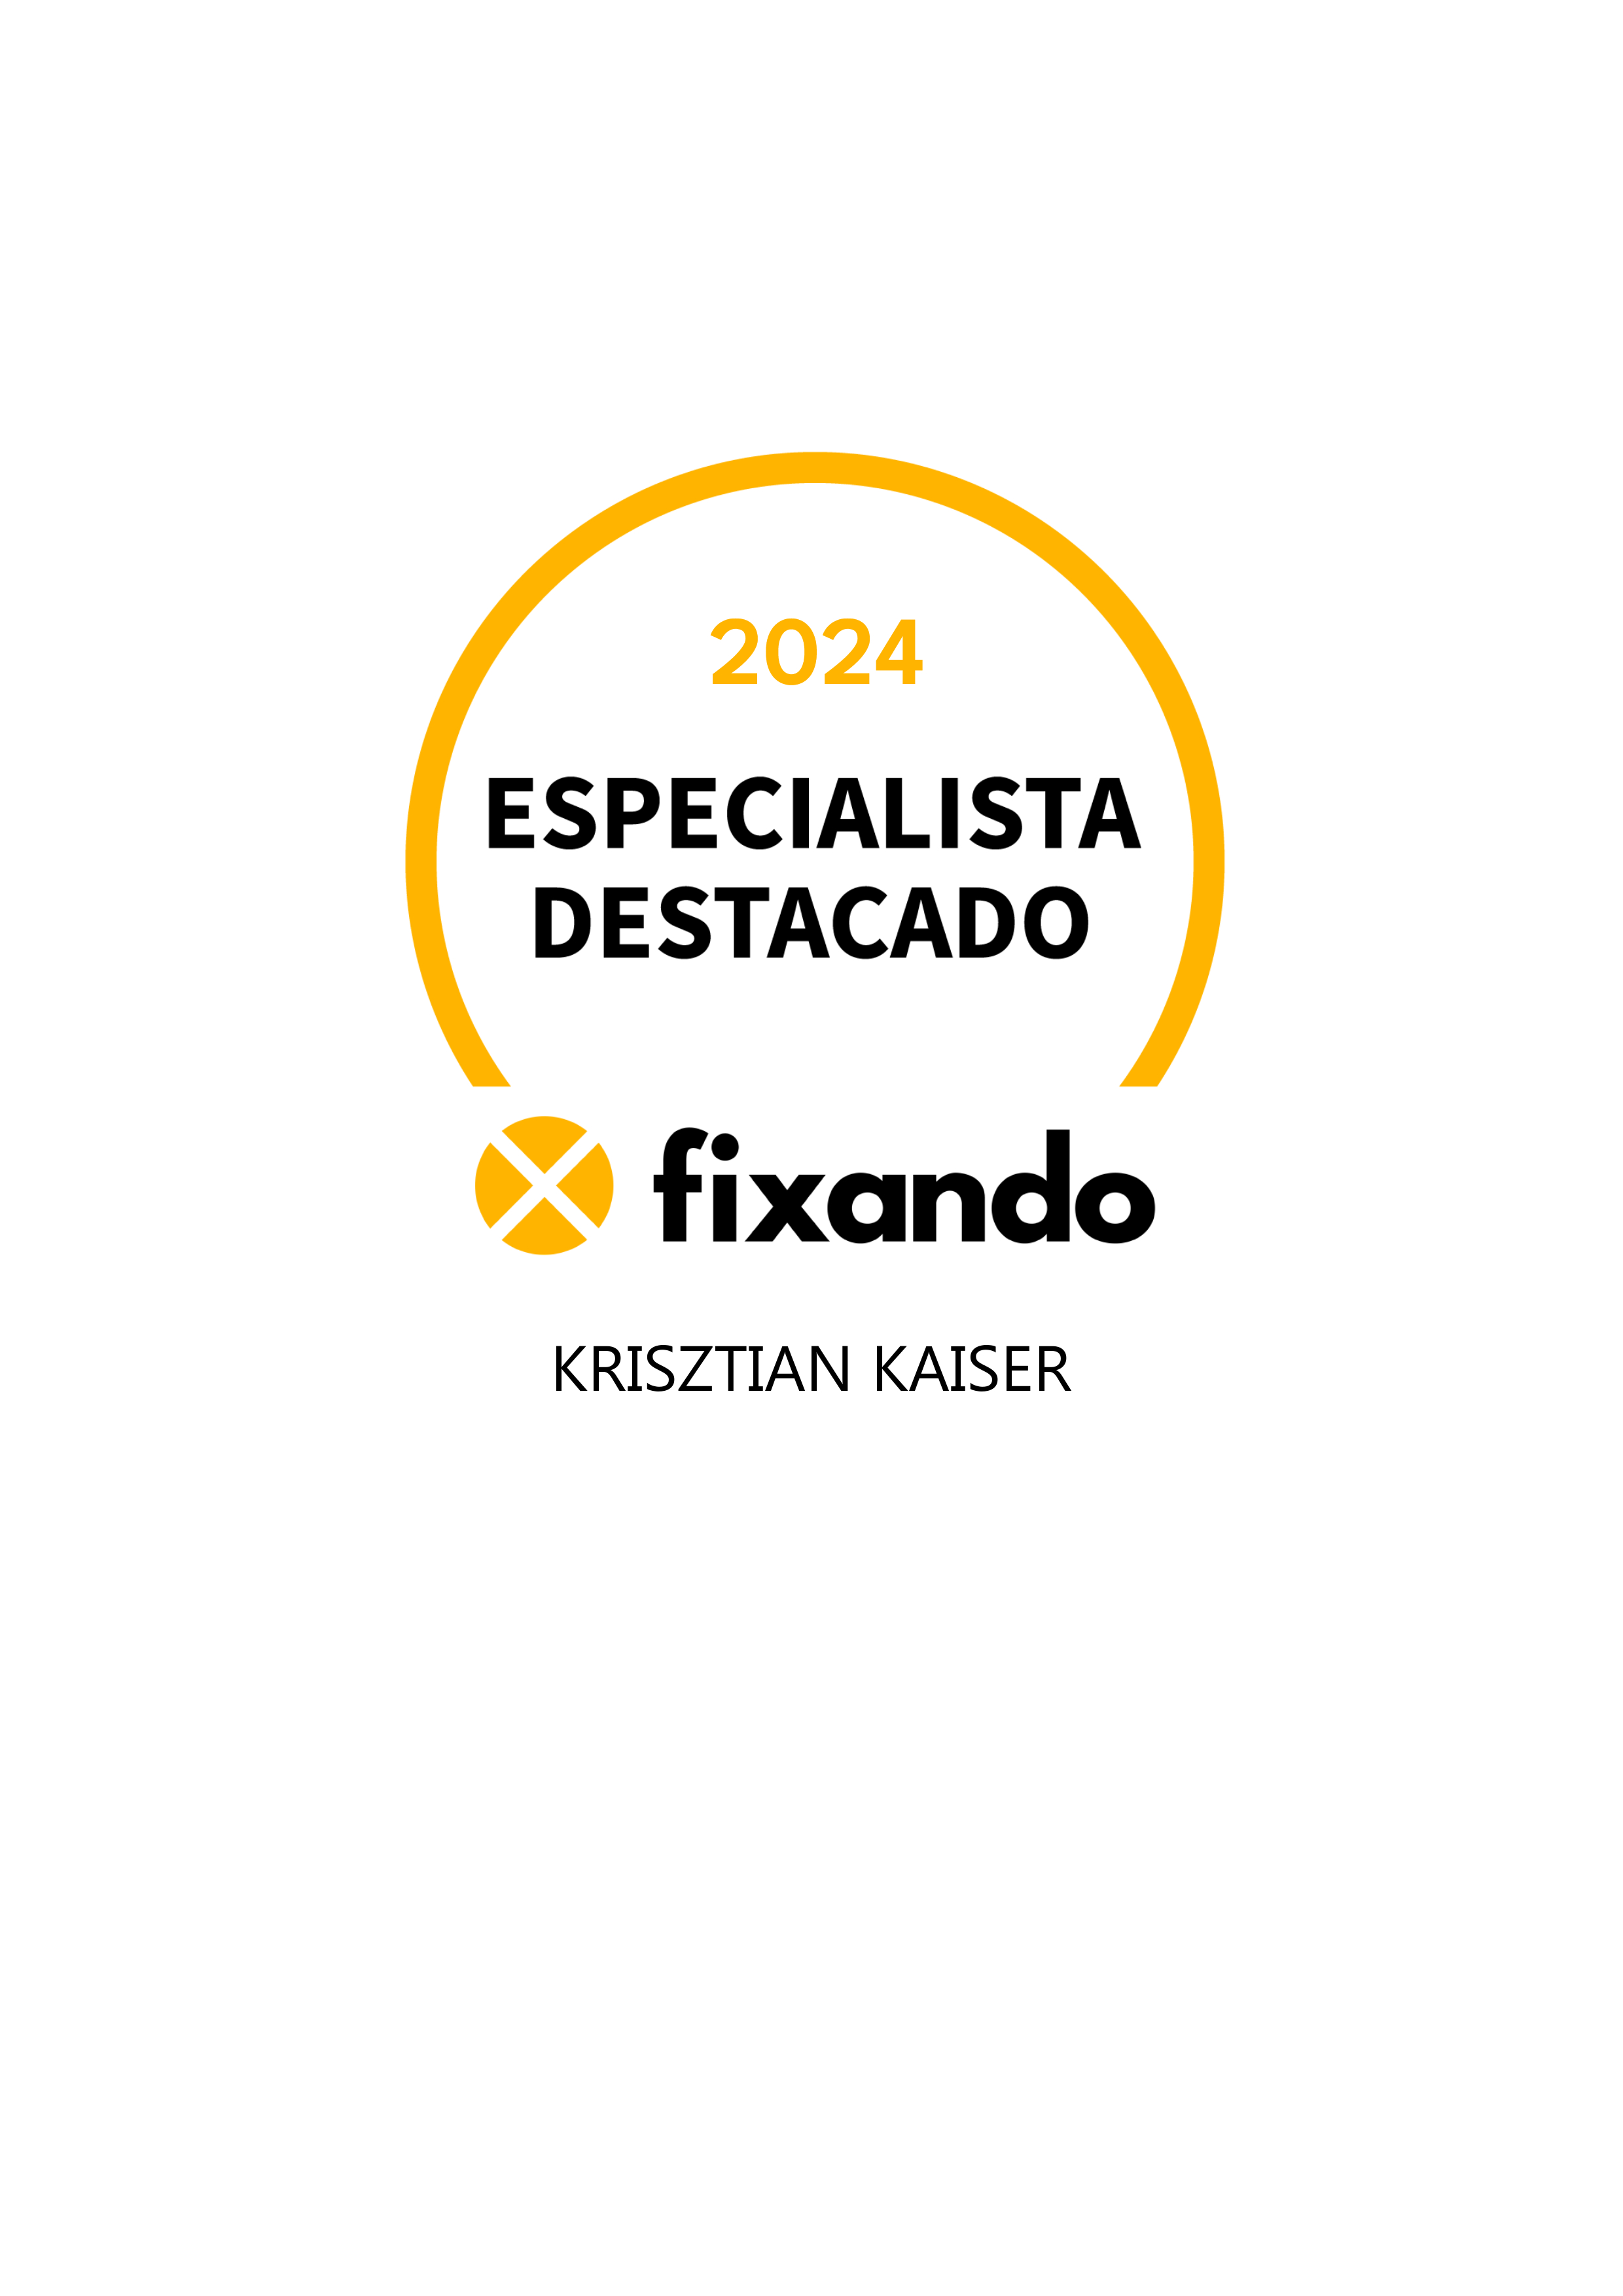 Krisztian Kaiser - Almada - Instalação de Pavimento em Pedra ou Ladrilho